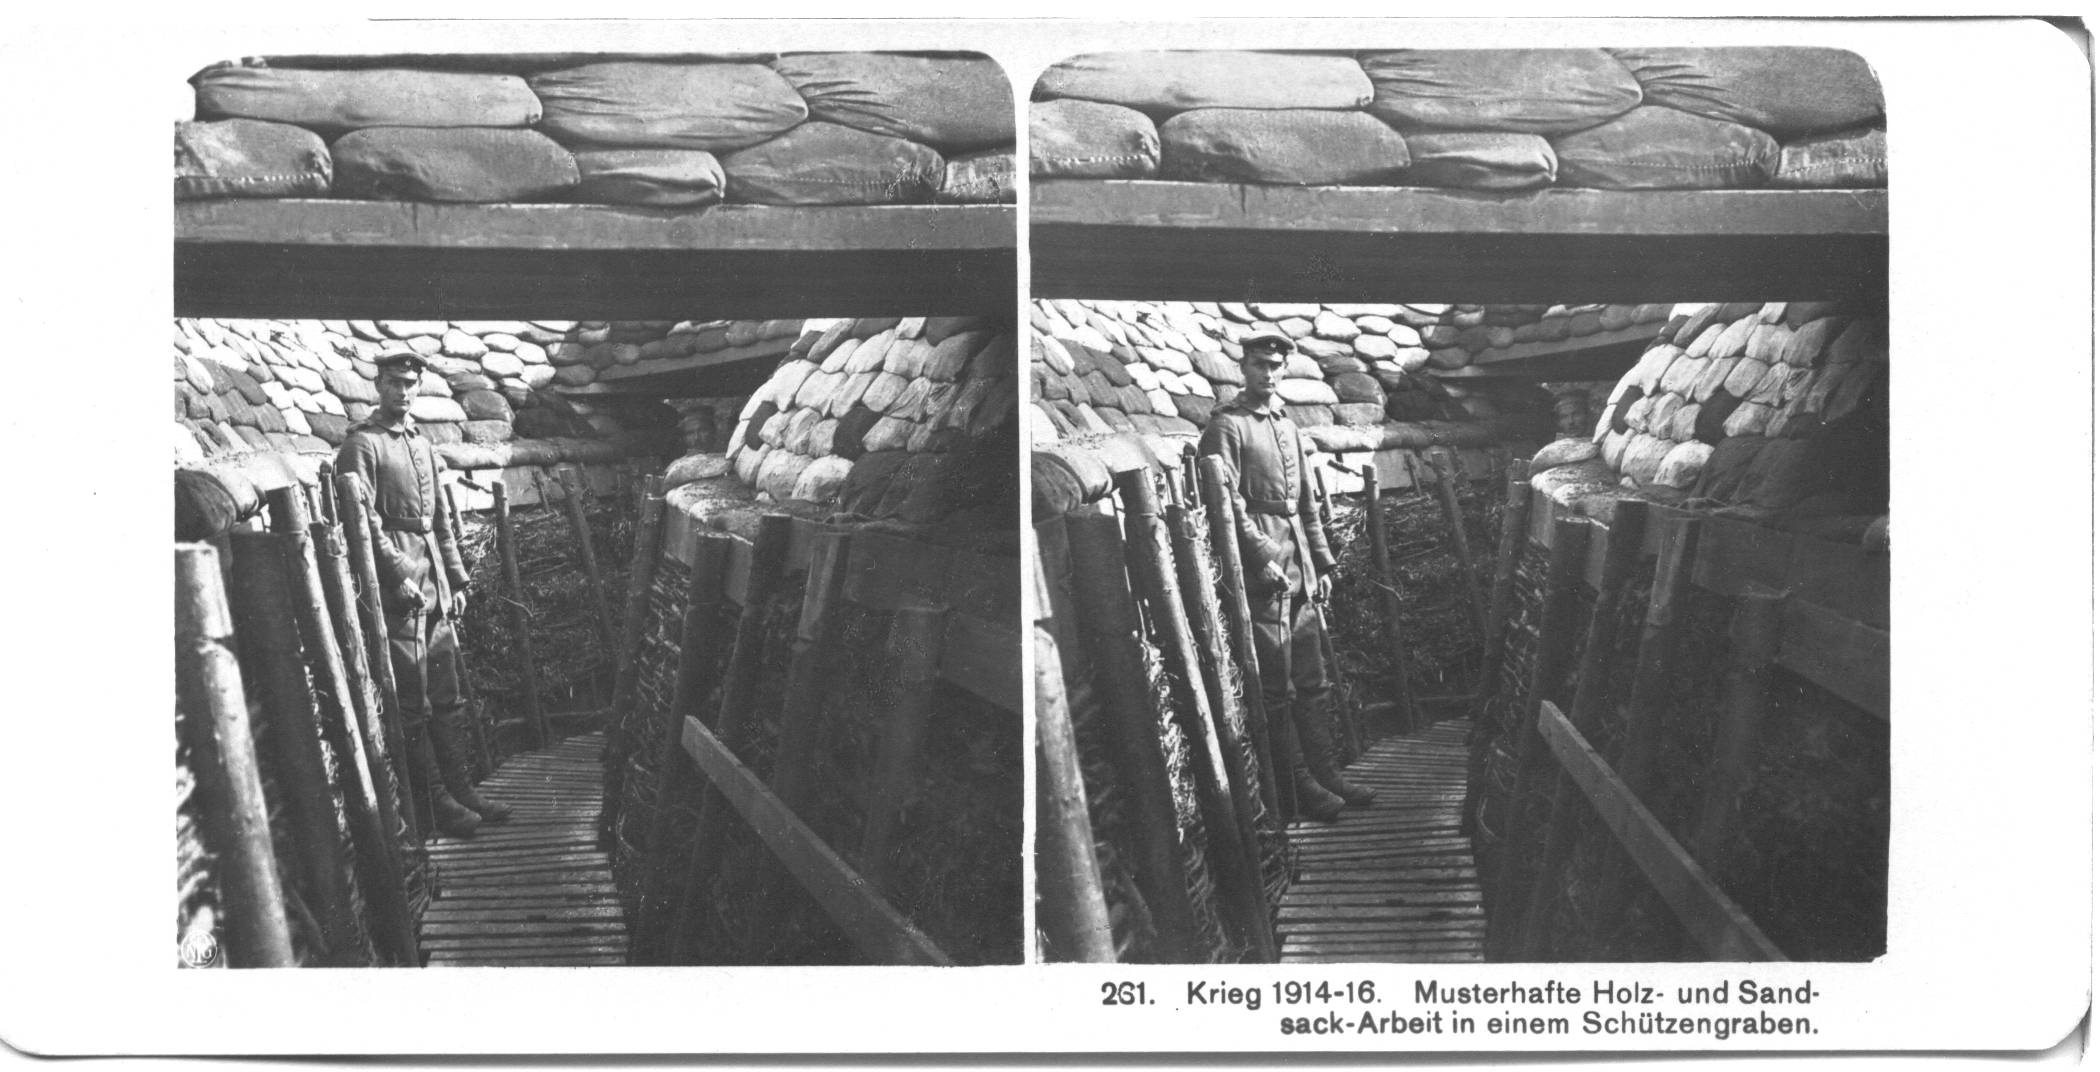 "Musterhafte Holzwerk und Sandsackarbeit in einem Schützengraben" - Exemplary wood and sandbag work in the trenches.